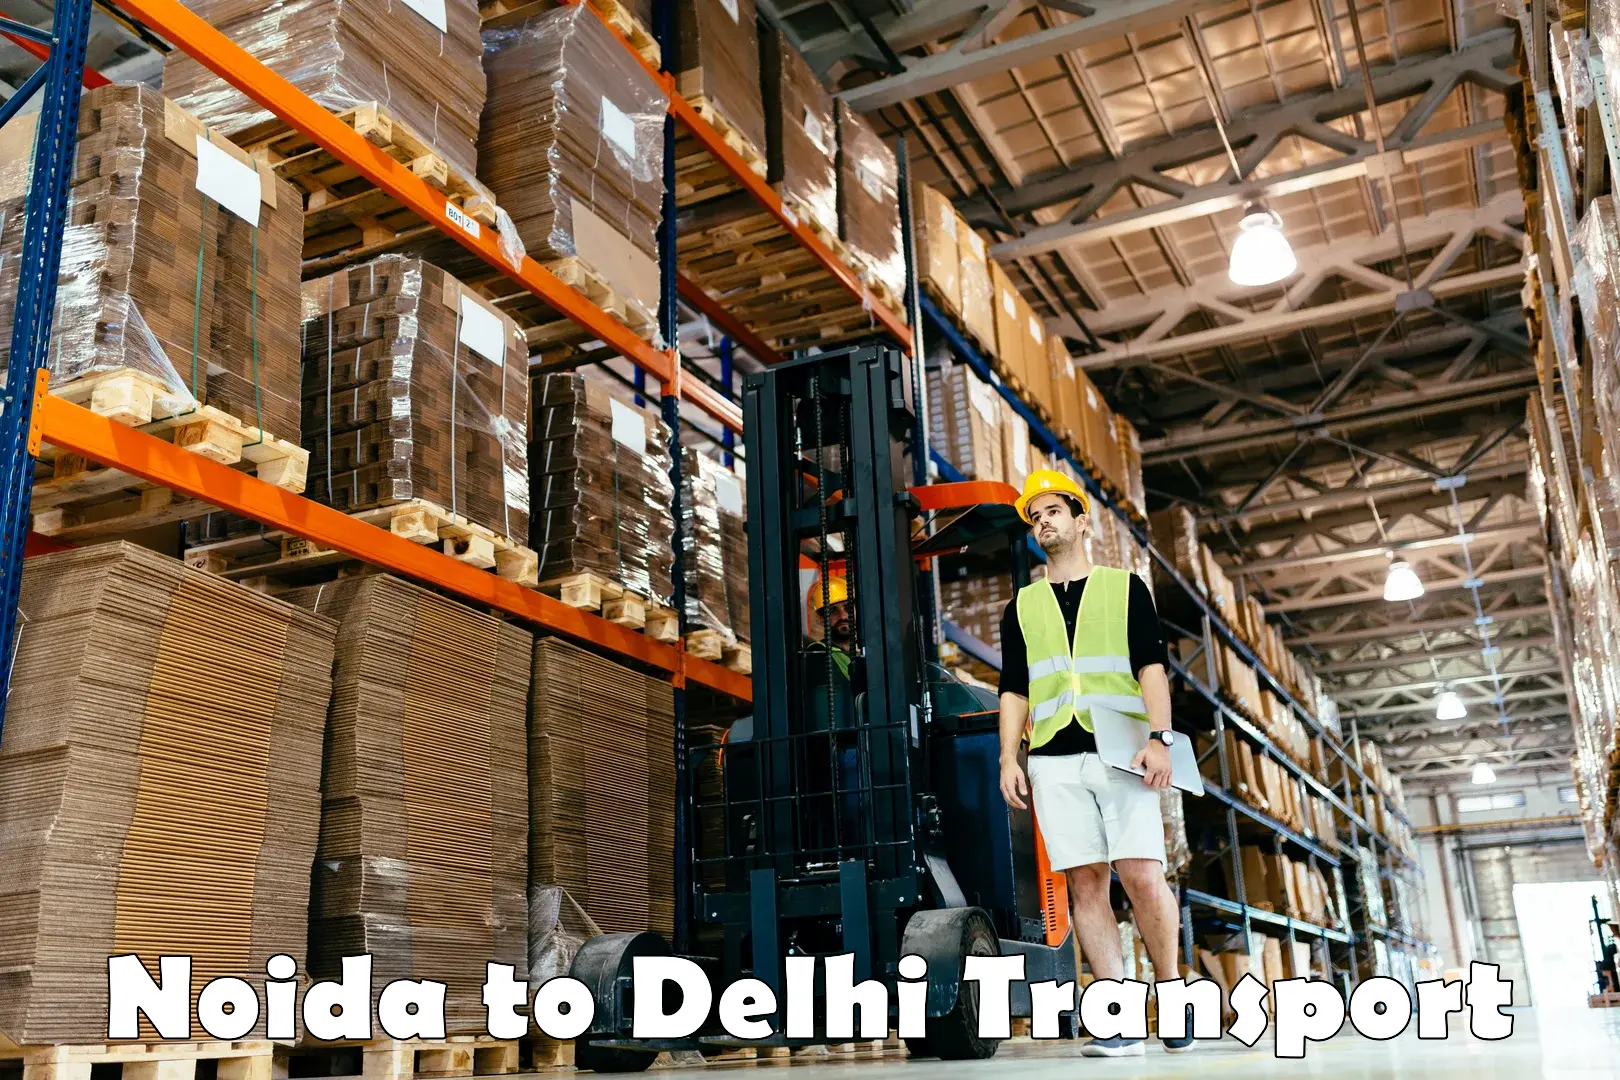 Interstate transport services Noida to Delhi